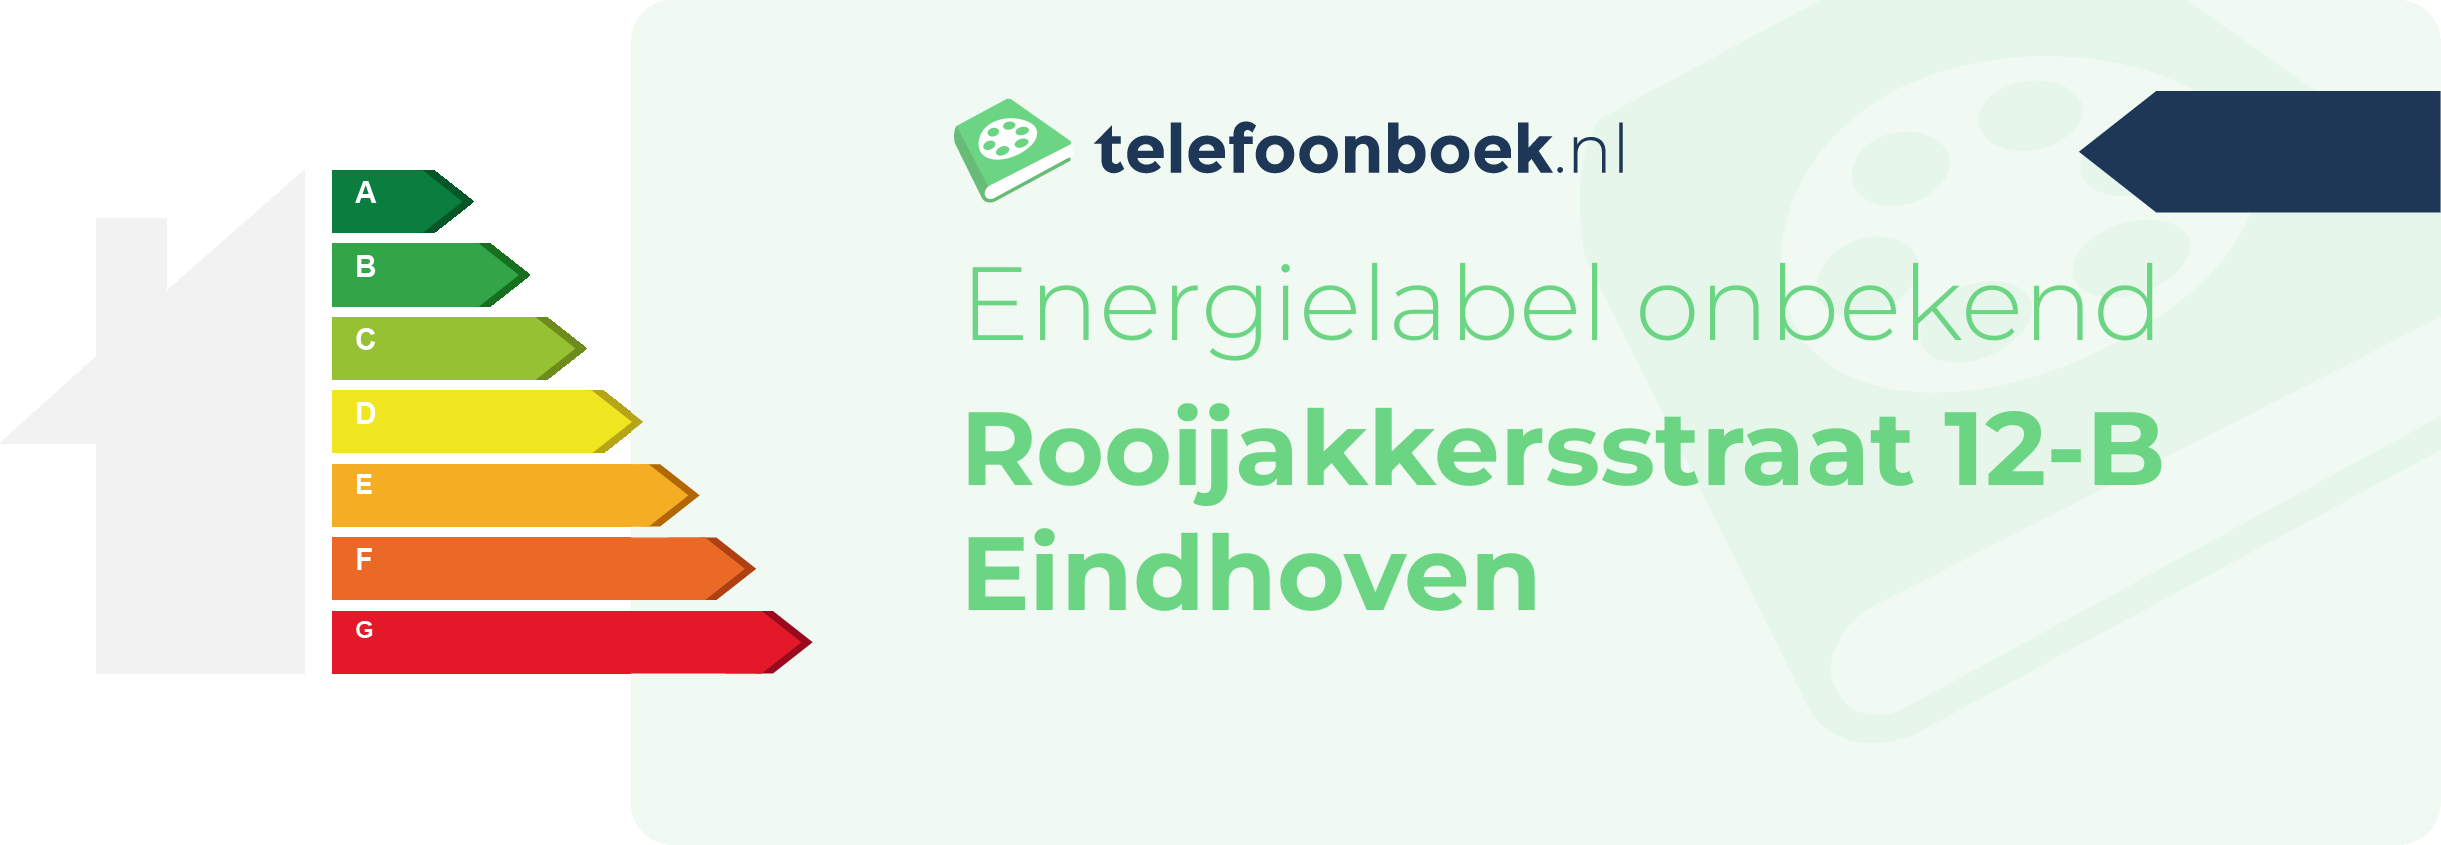 Energielabel Rooijakkersstraat 12-B Eindhoven